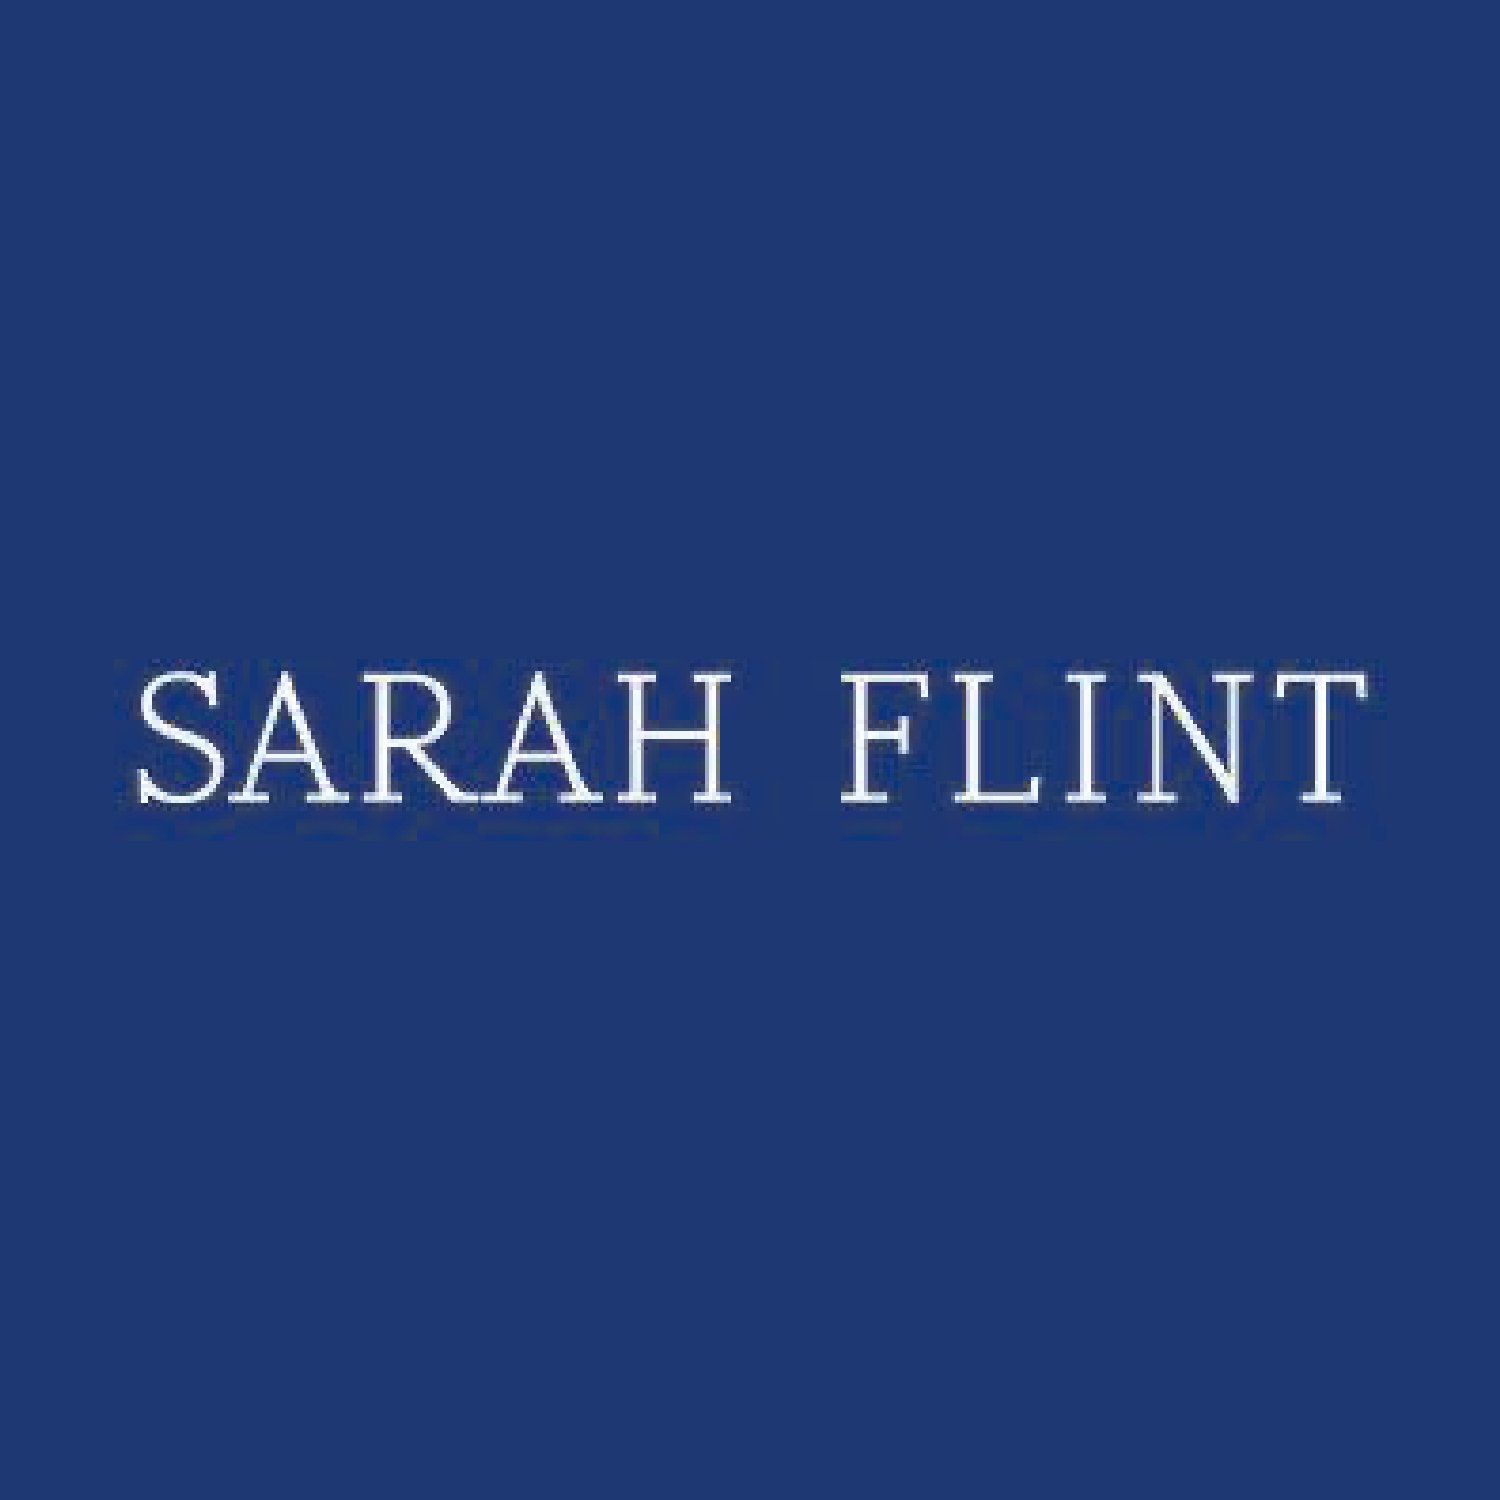 SarahFlint-01.jpg